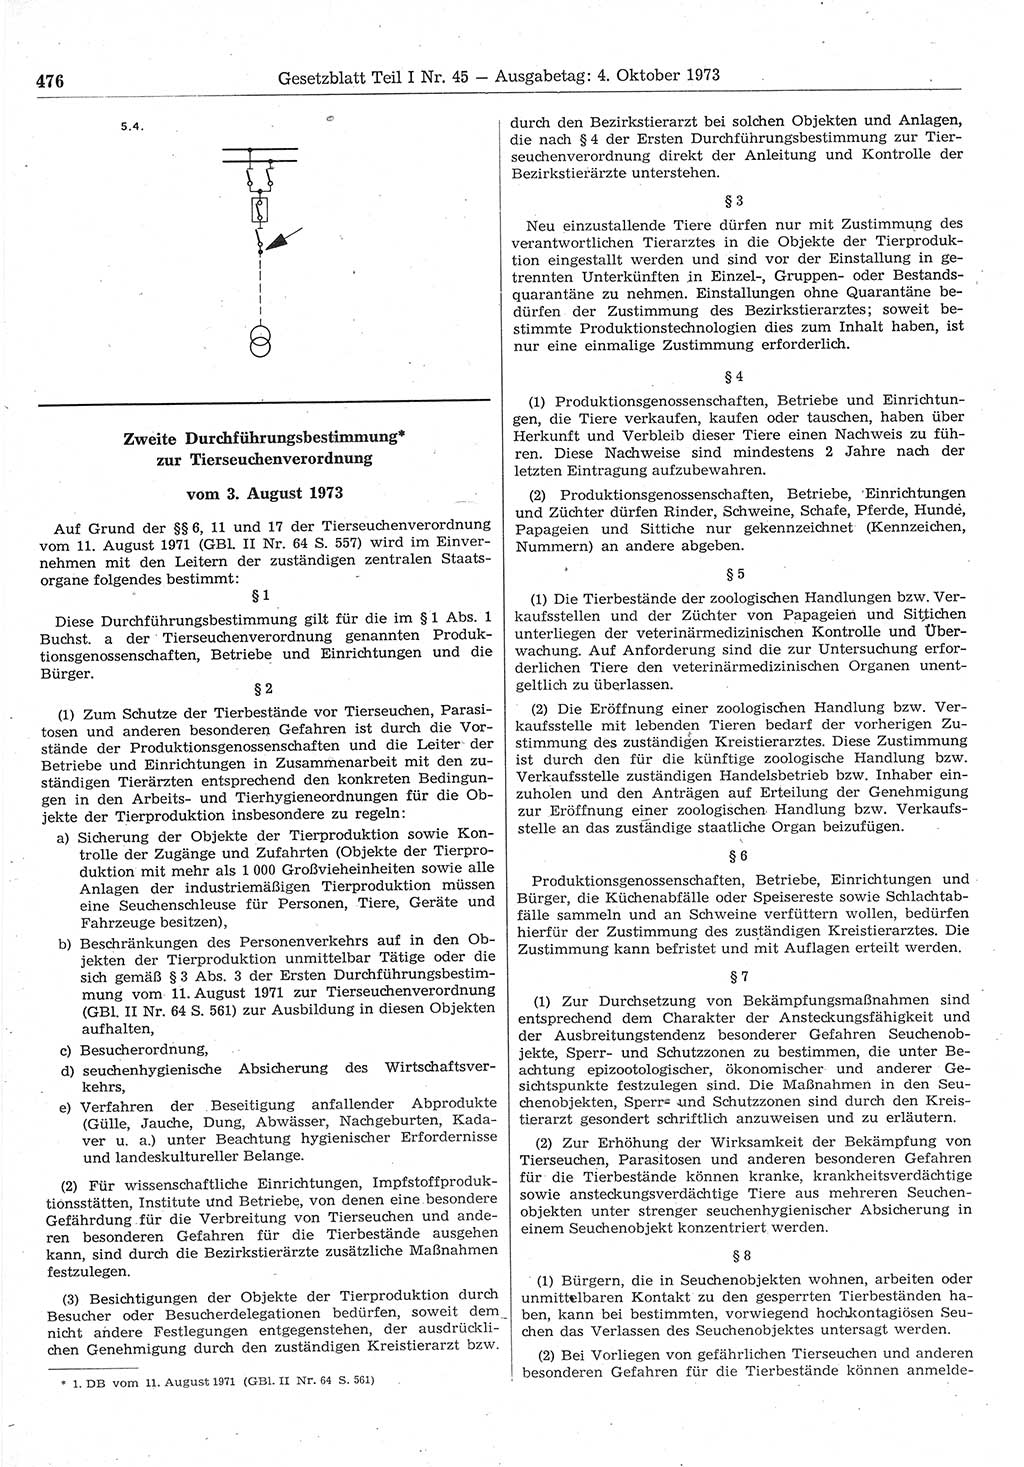 Gesetzblatt (GBl.) der Deutschen Demokratischen Republik (DDR) Teil Ⅰ 1973, Seite 476 (GBl. DDR Ⅰ 1973, S. 476)